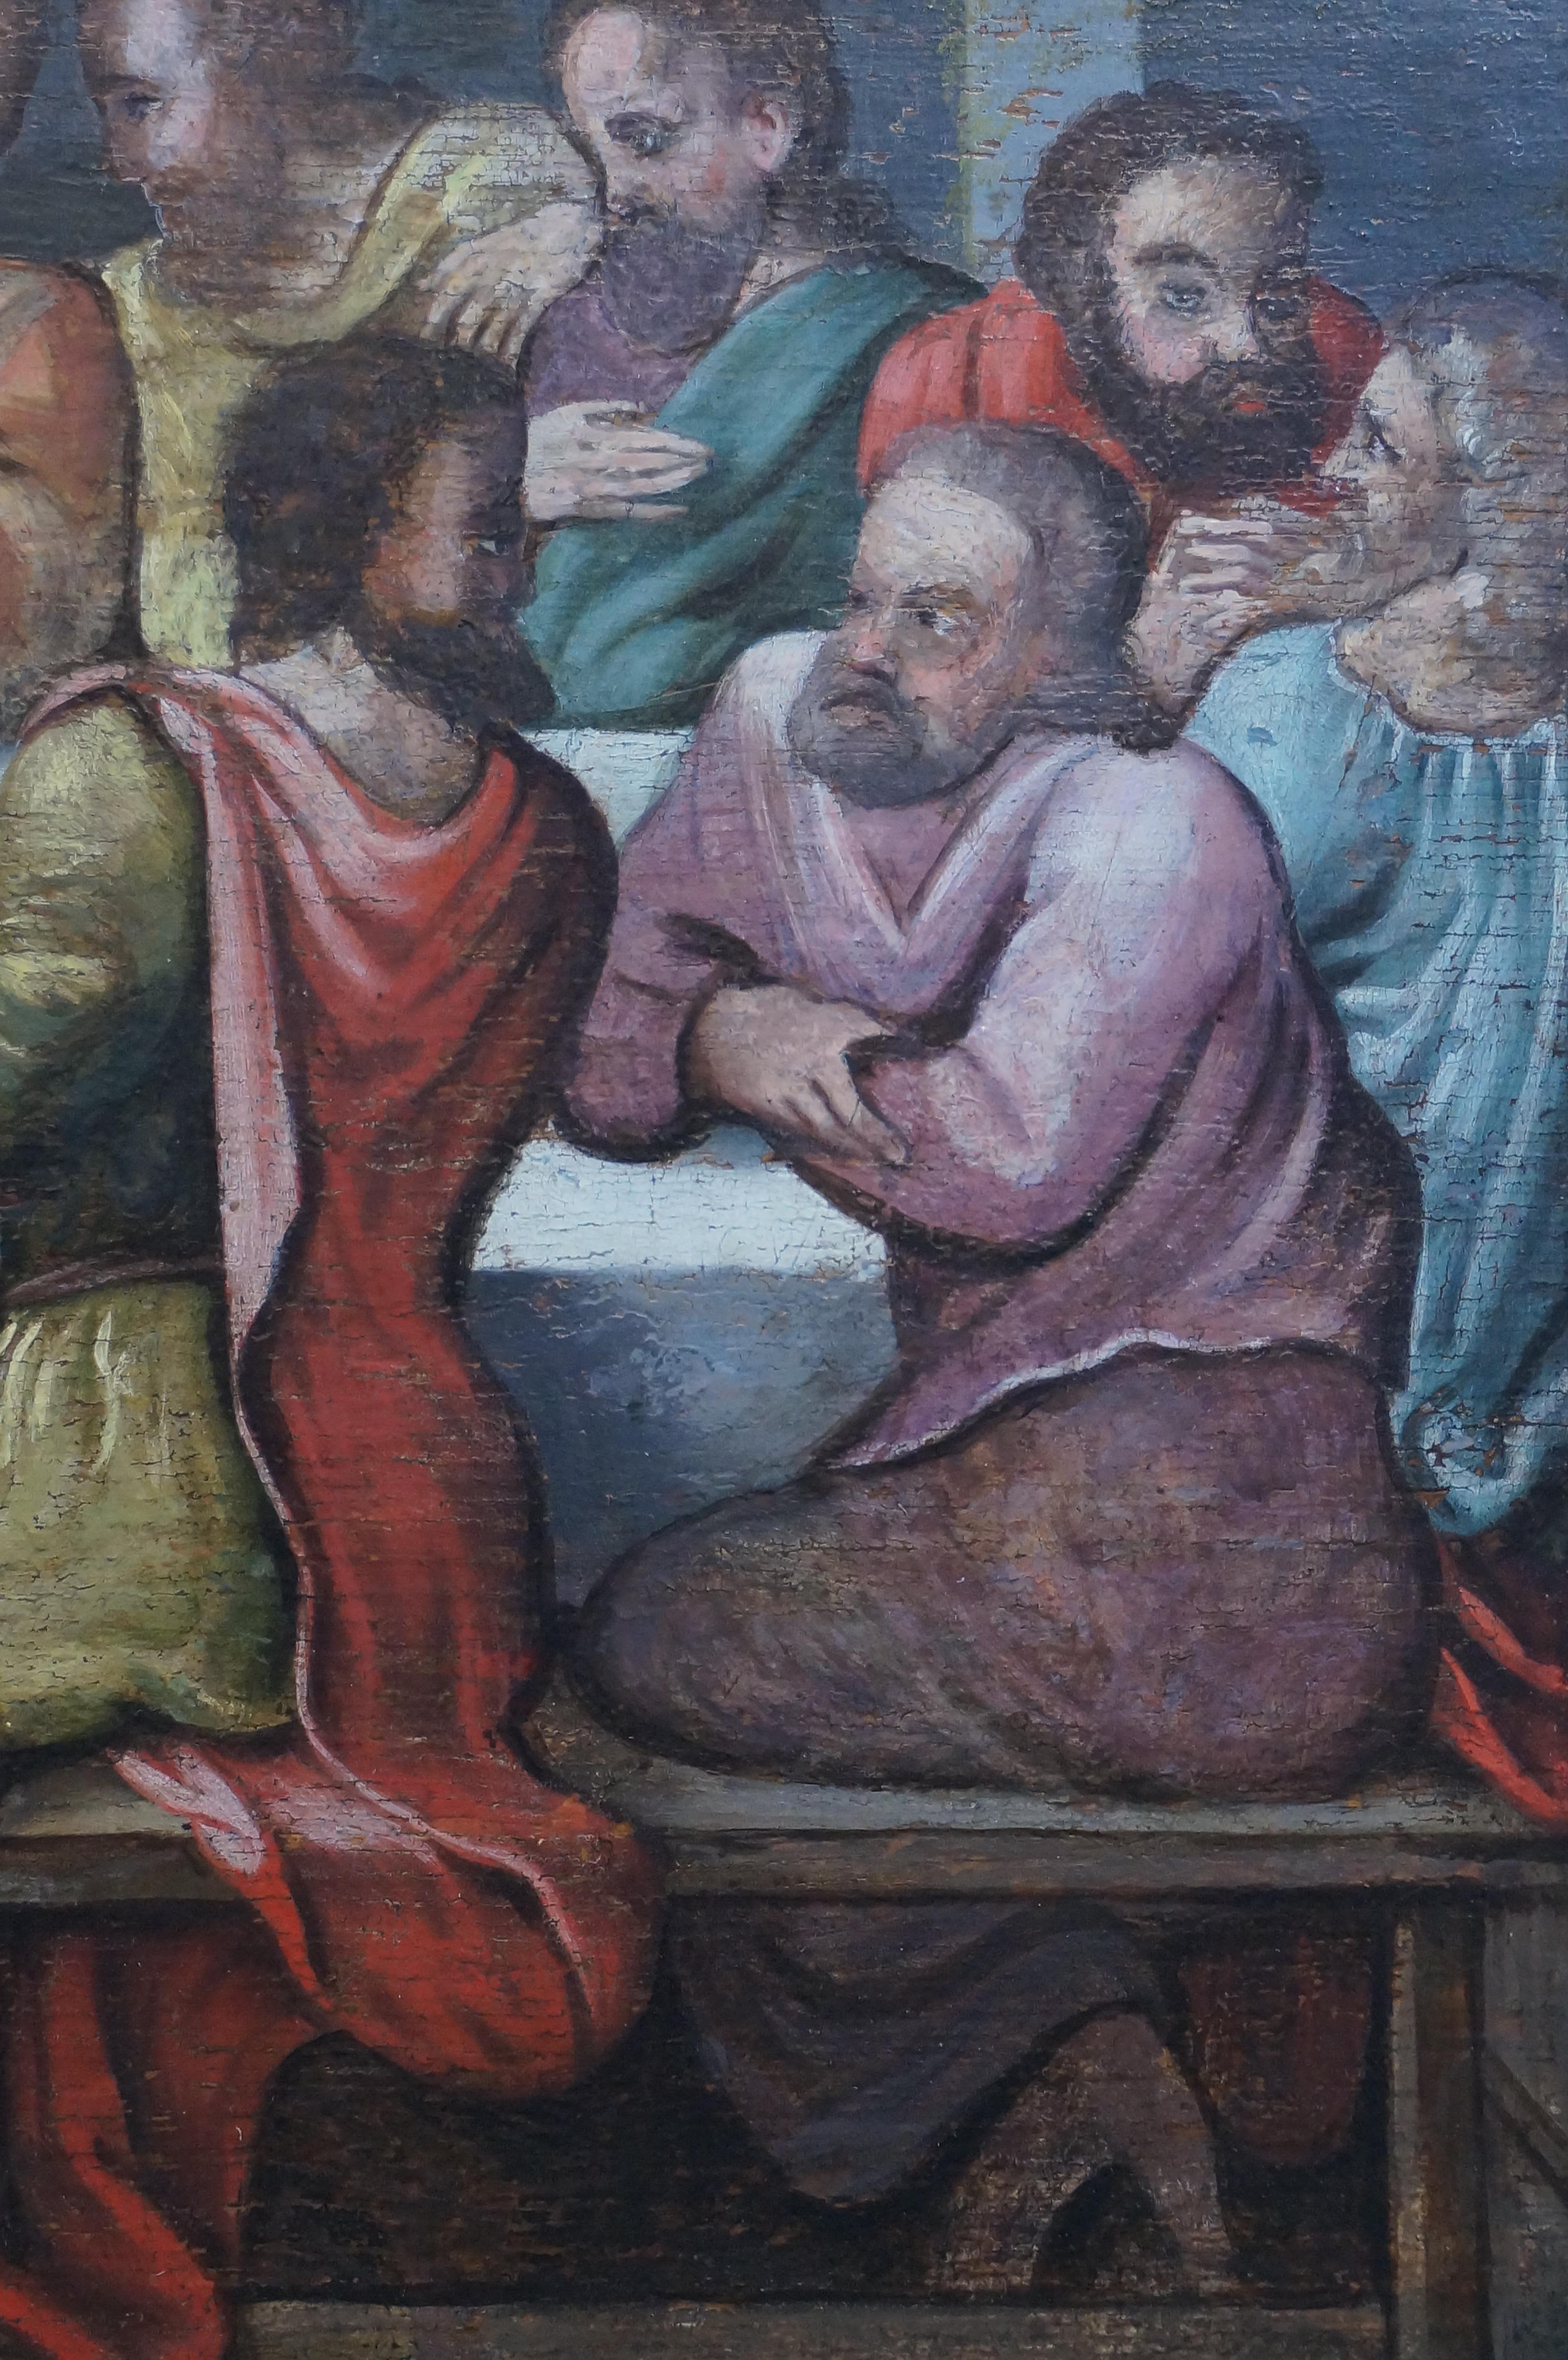 Anrique oil painting, Last Supper, German school, Renaissance, Late 16th c. 6